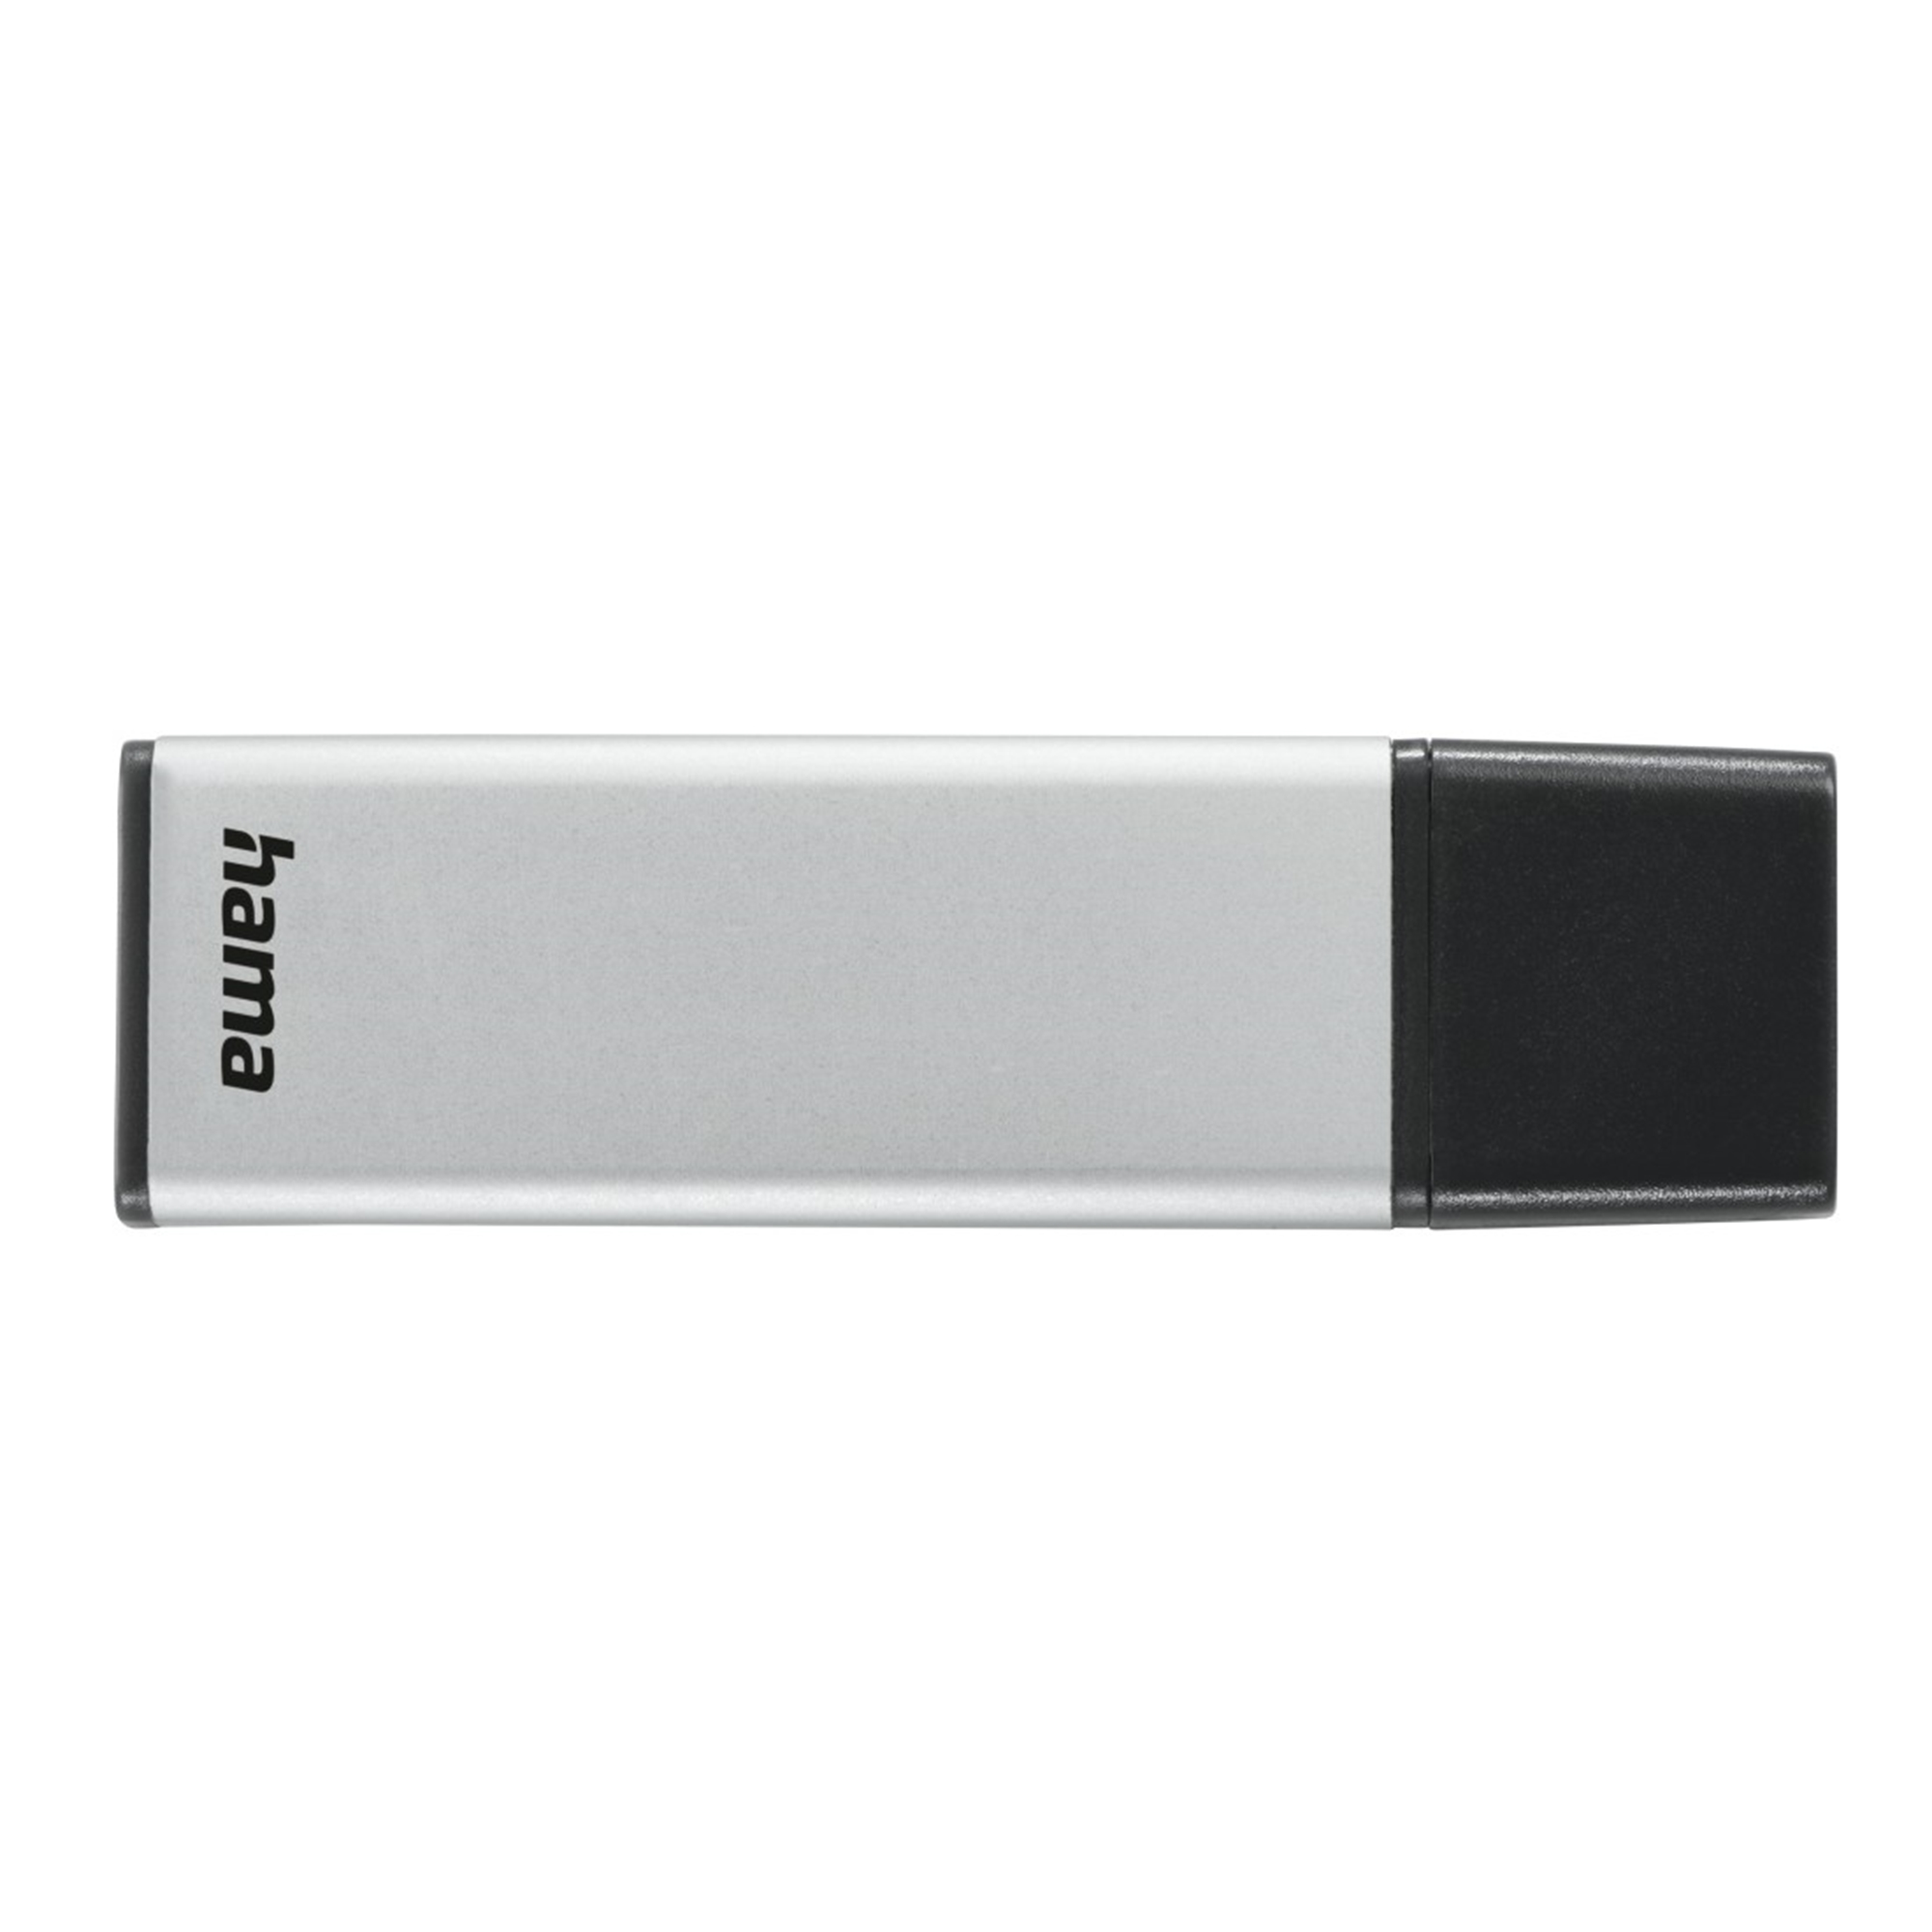 HAMA GB USB-Stick 256 256 (Silber, Classic GB)